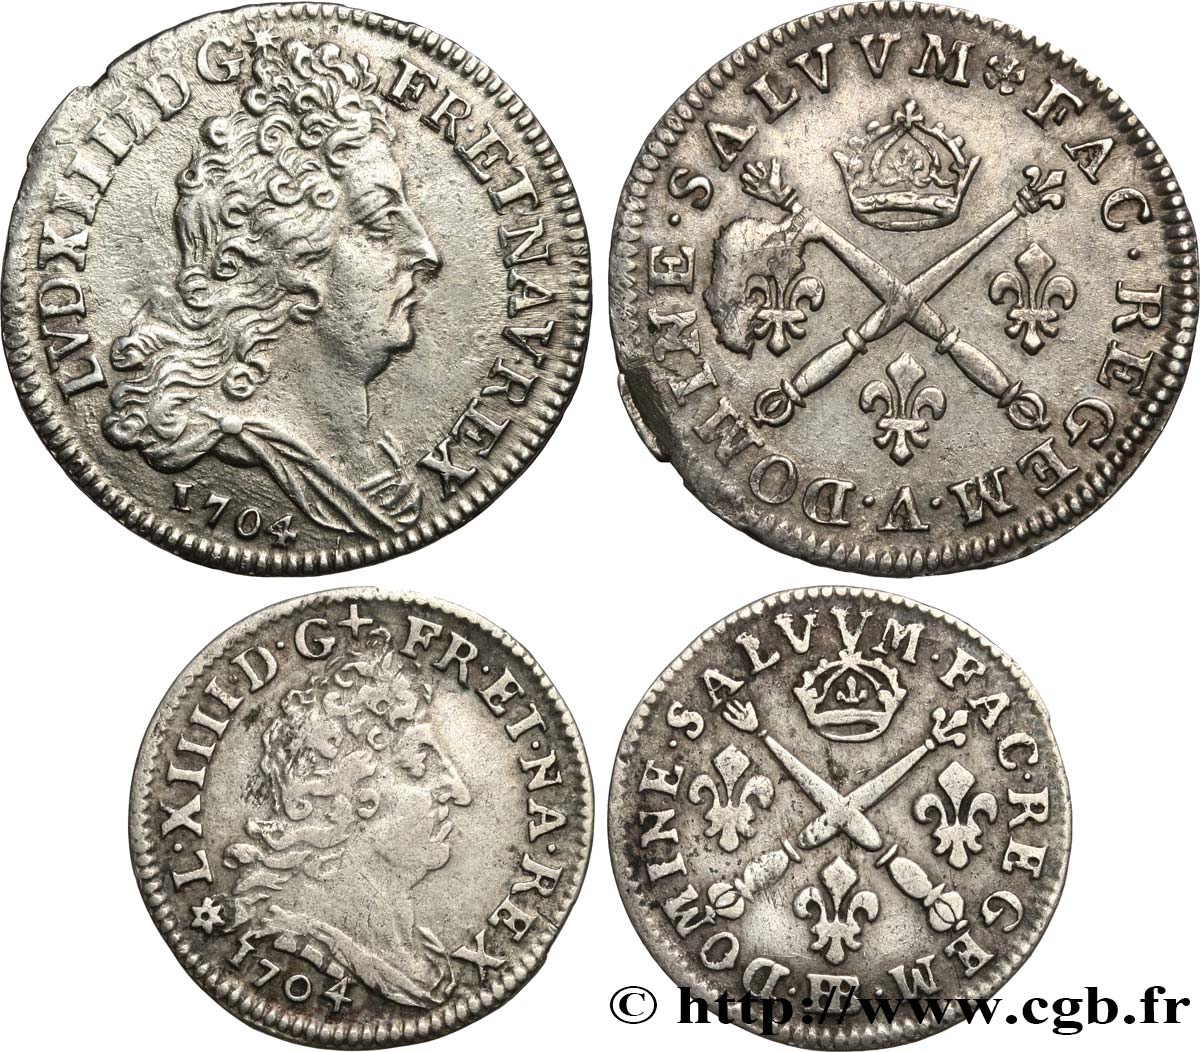 LOUIS XIV  THE SUN KING  Lot de 2 monnaies royales en argent 1704 Ateliers divers SS